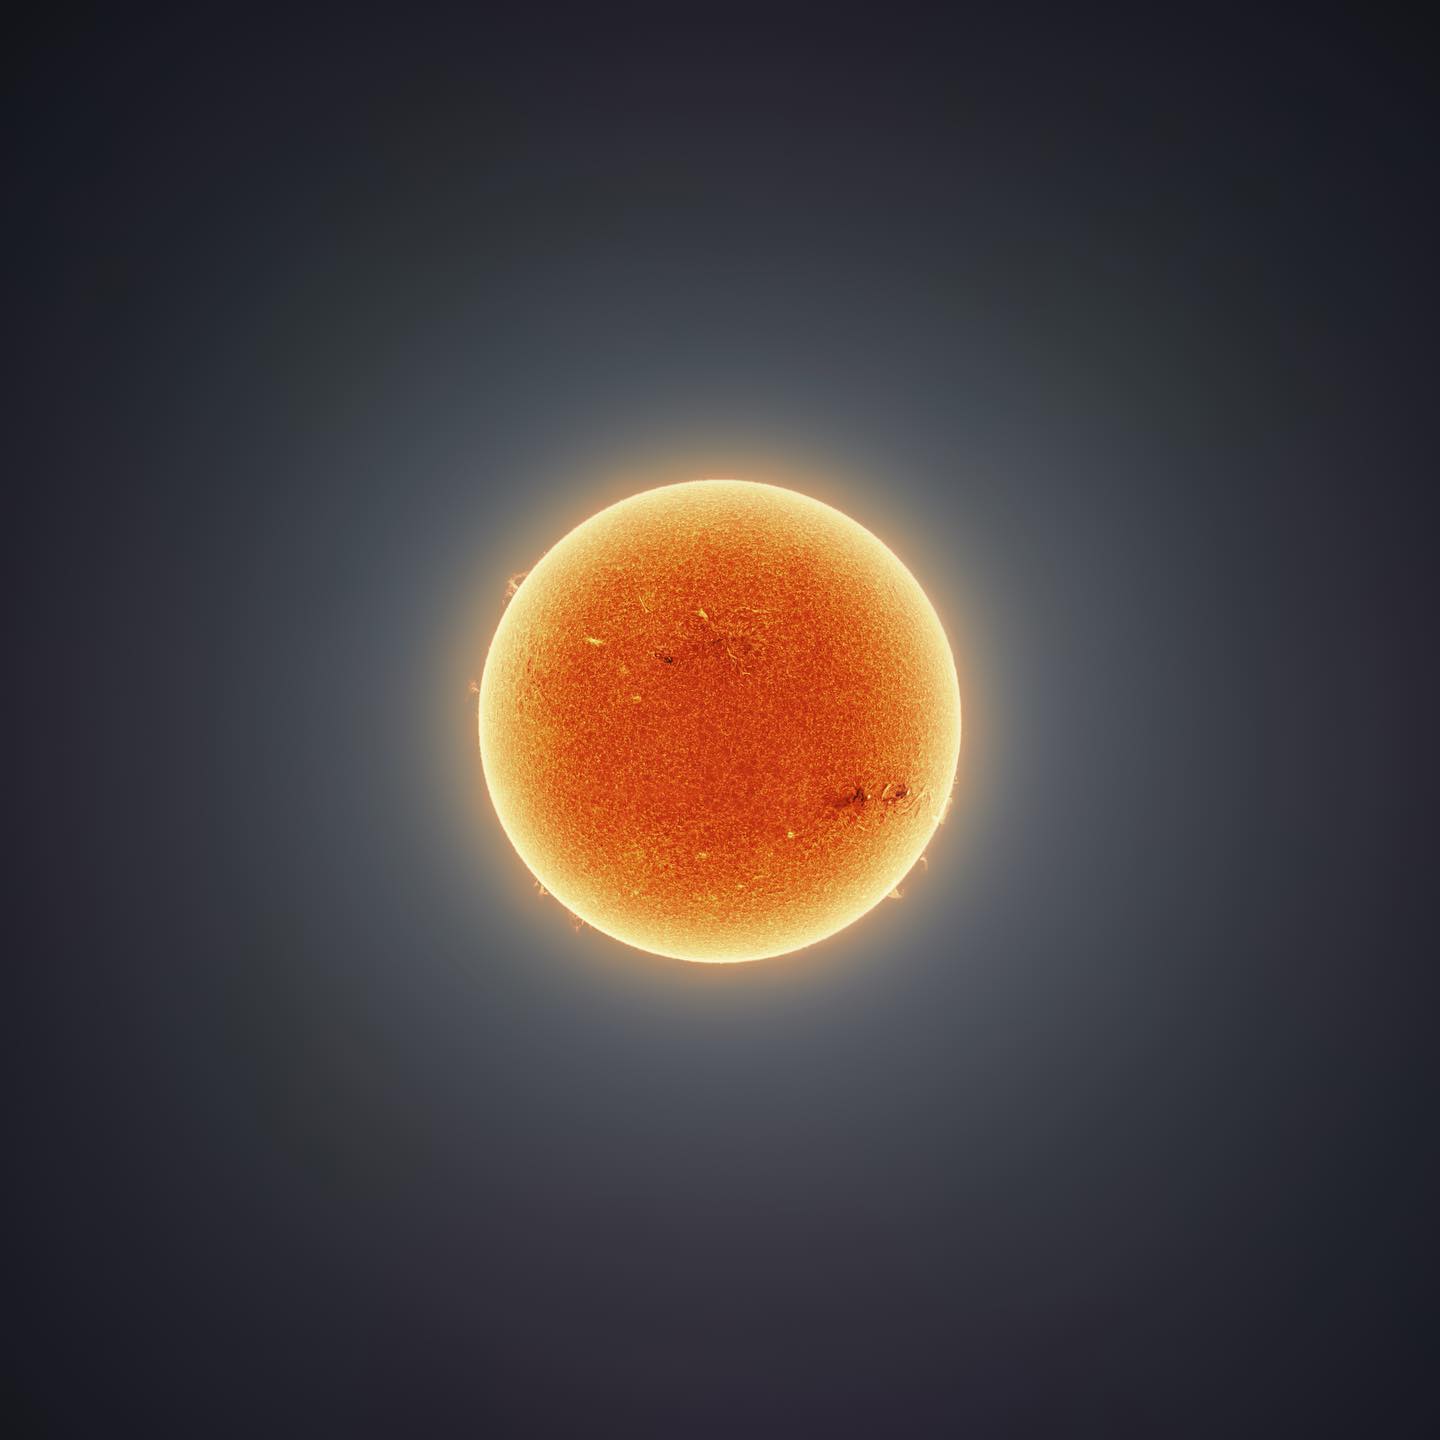 天文摄影家用15万张图制作出一张壮观的太阳照